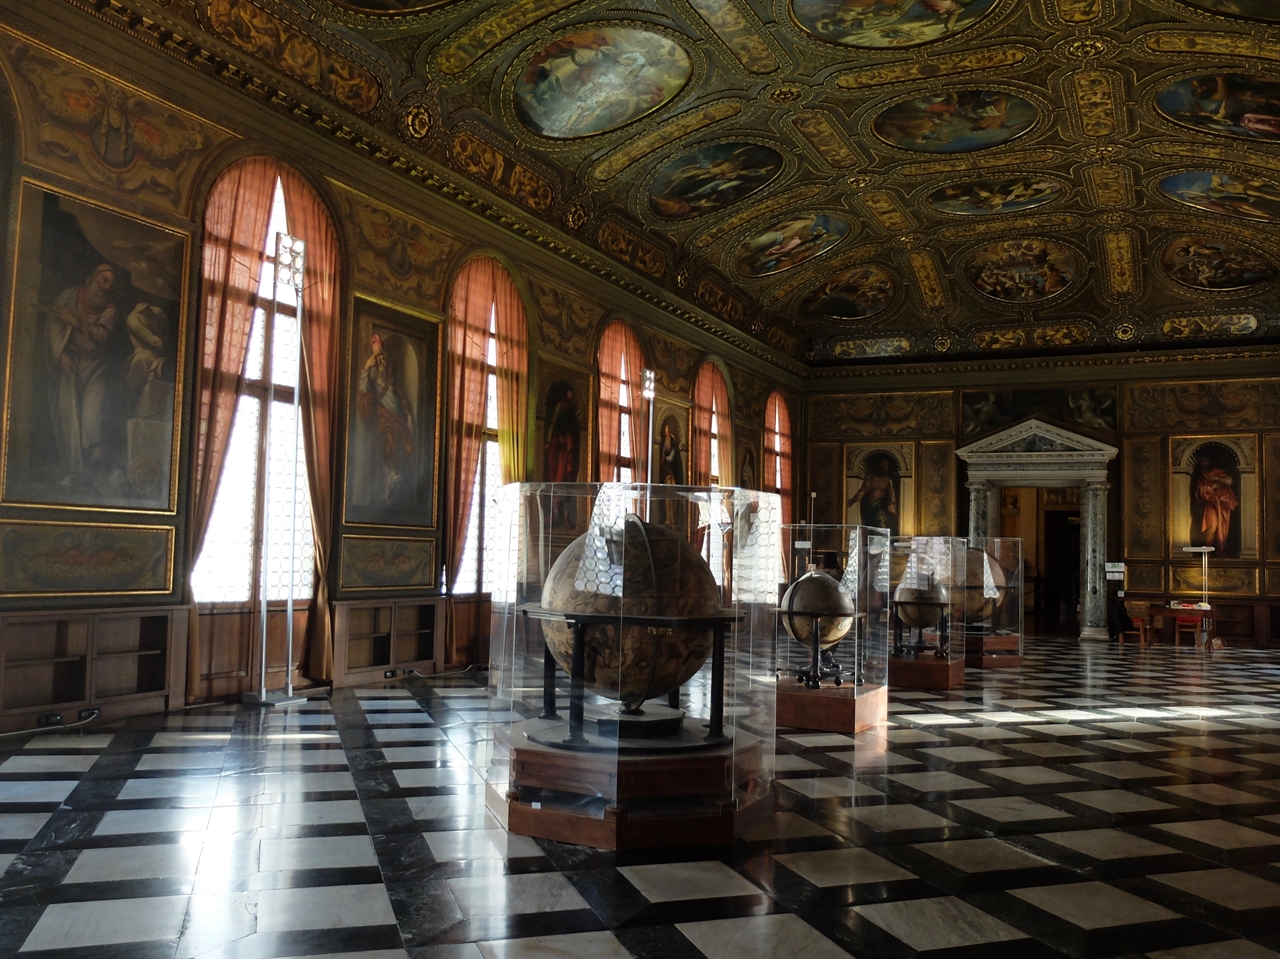 베네치아 시립 박물관인 이곳은 나폴레옹 점령 당시, 나폴레옹의 집무실로 사용된 곳이기도 합니다.  